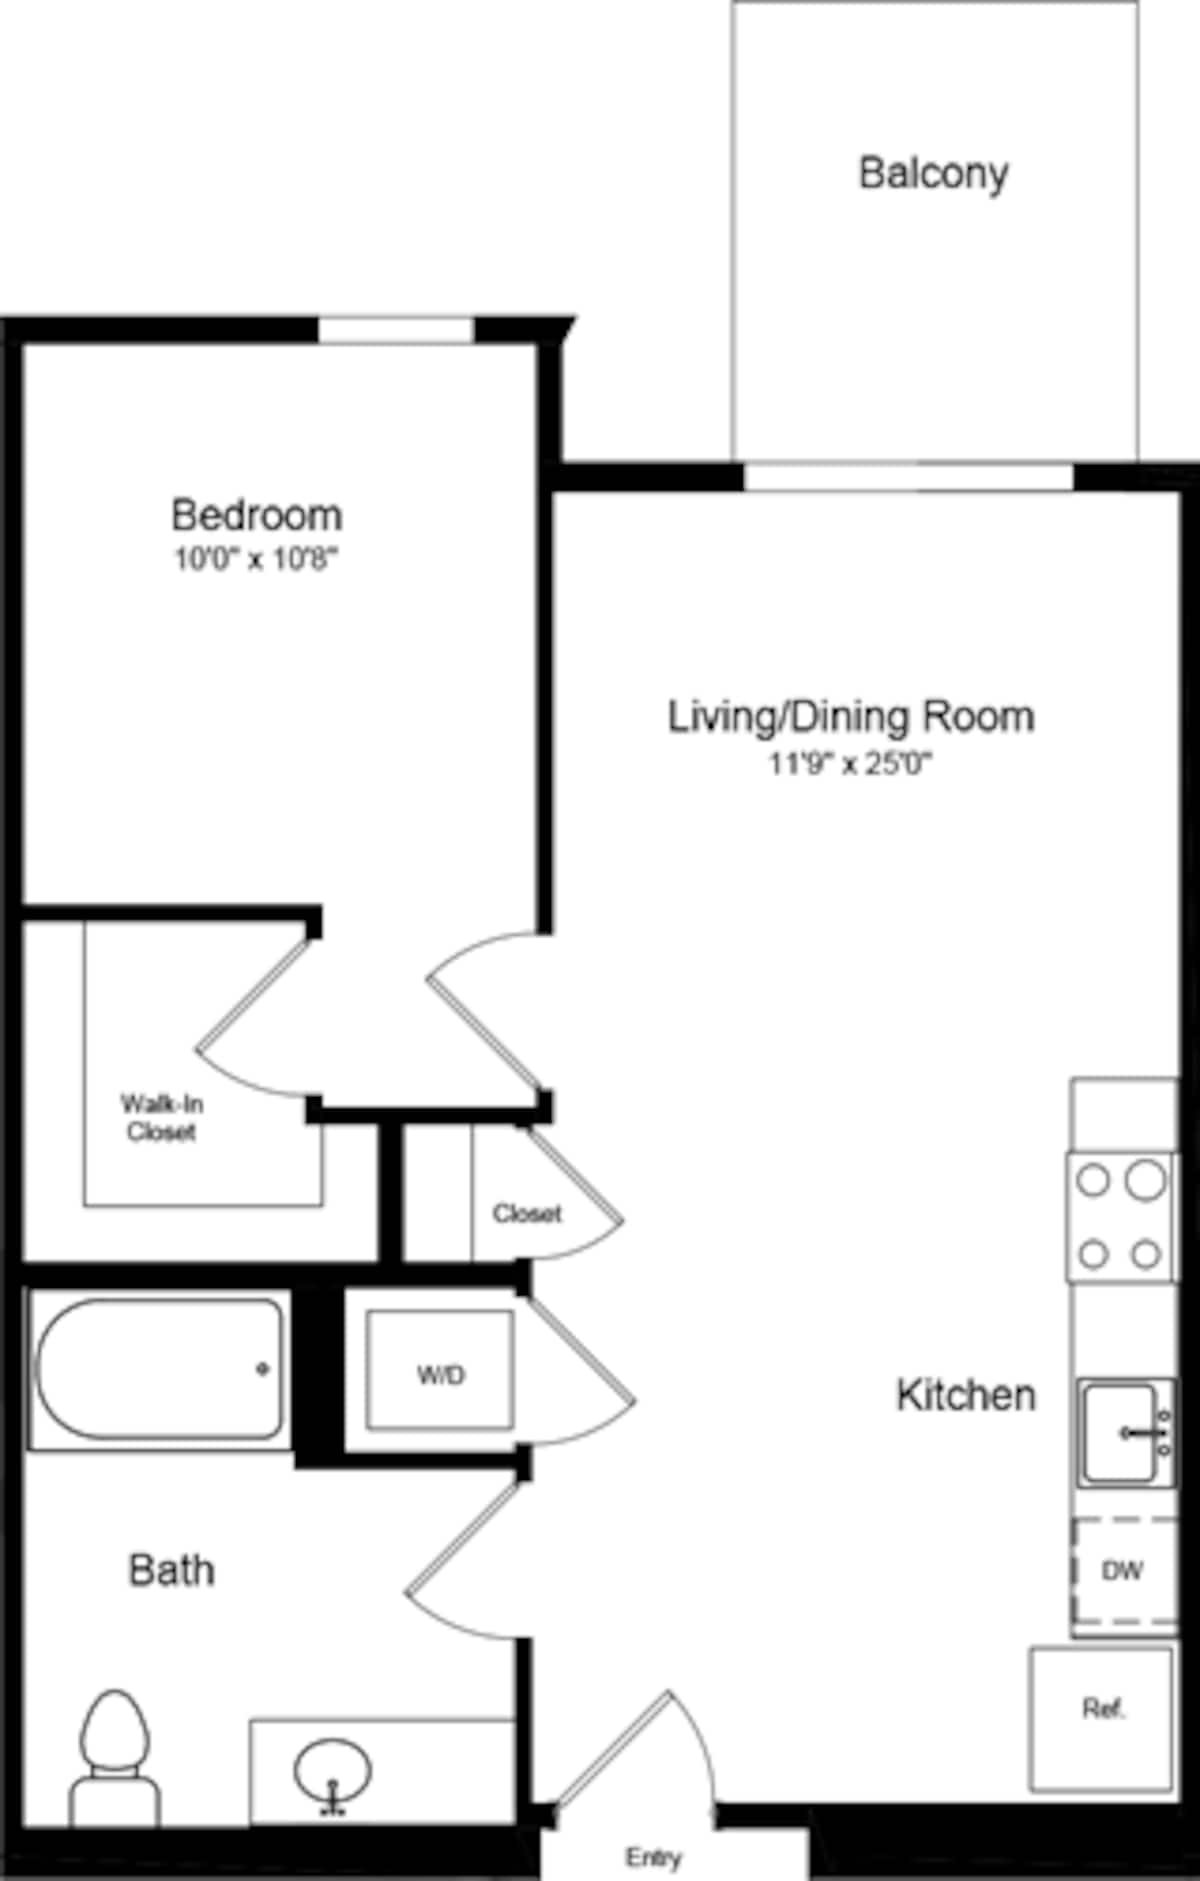 Floorplan diagram for 1 Bedroom A6, showing 1 bedroom